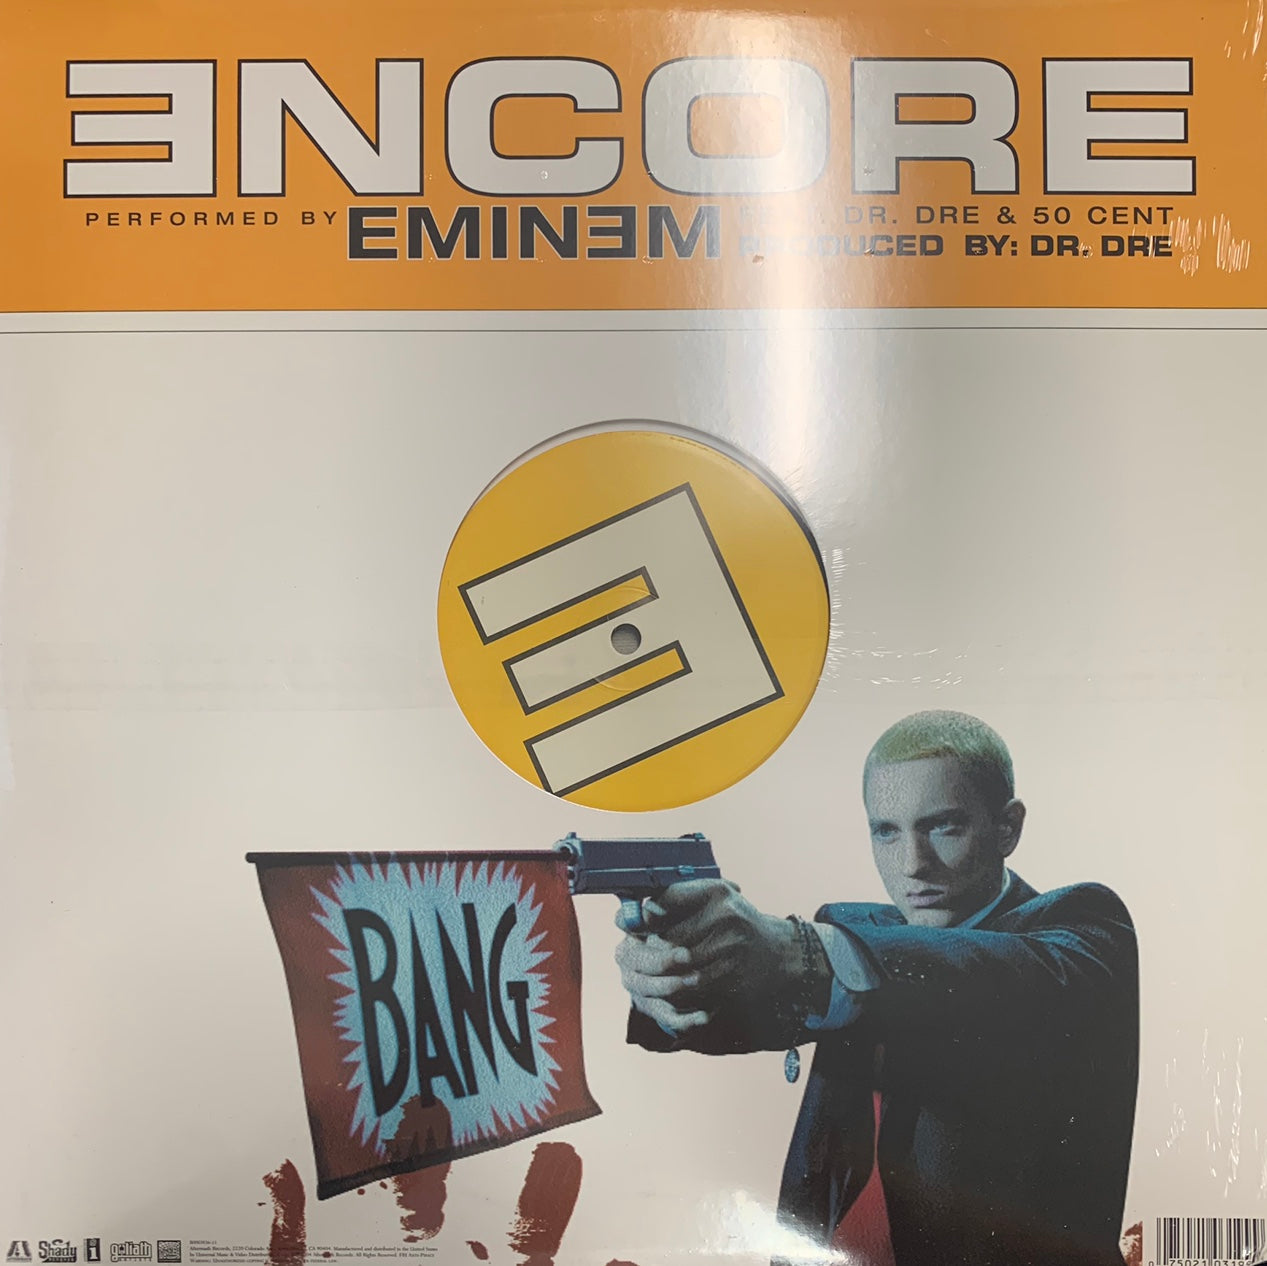 Eminem Feat Dr Dre “Encore” 4 Version 12inch Vinyl